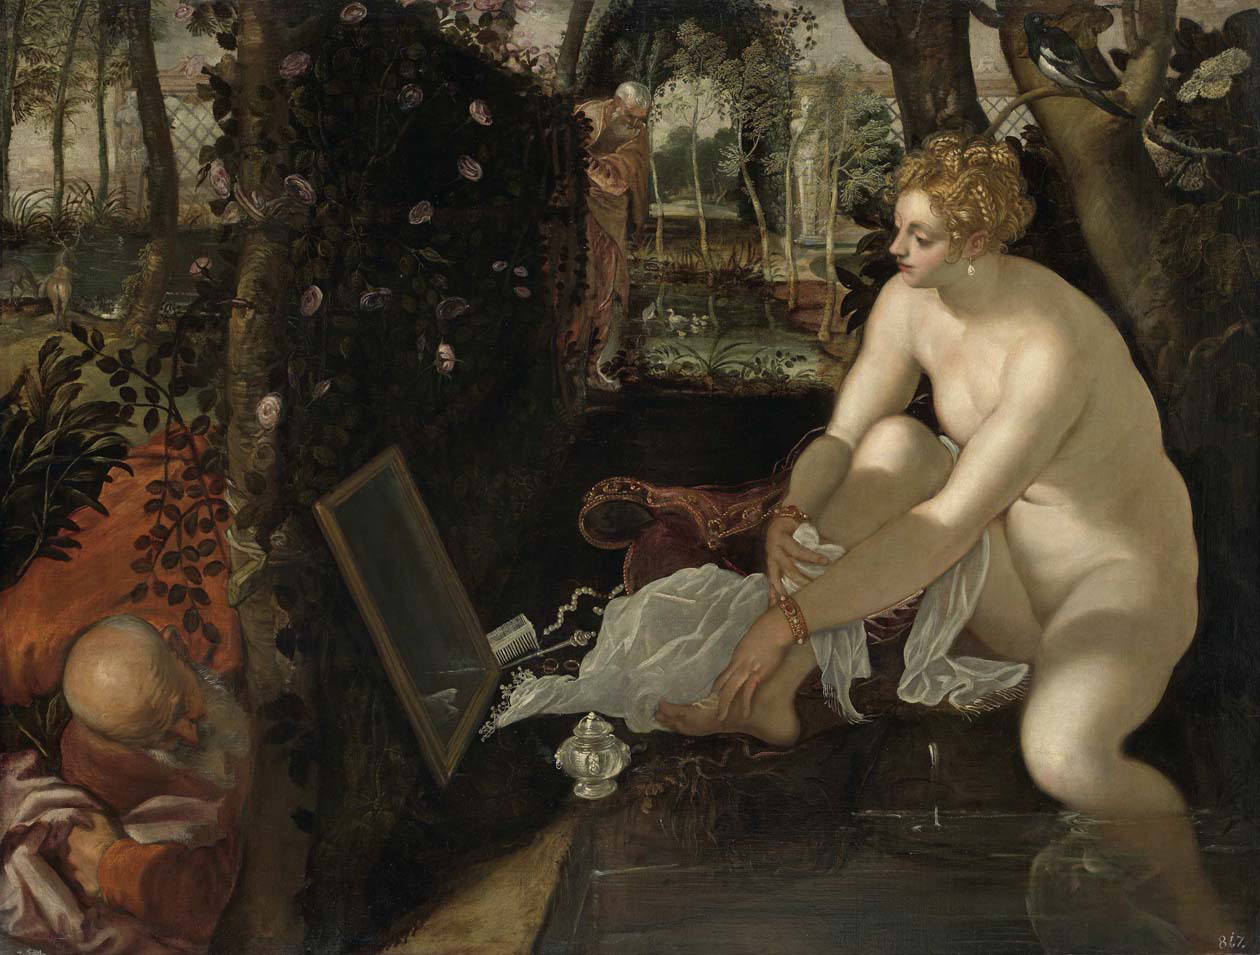 Tintoretto "Susanna e i vecchioni"